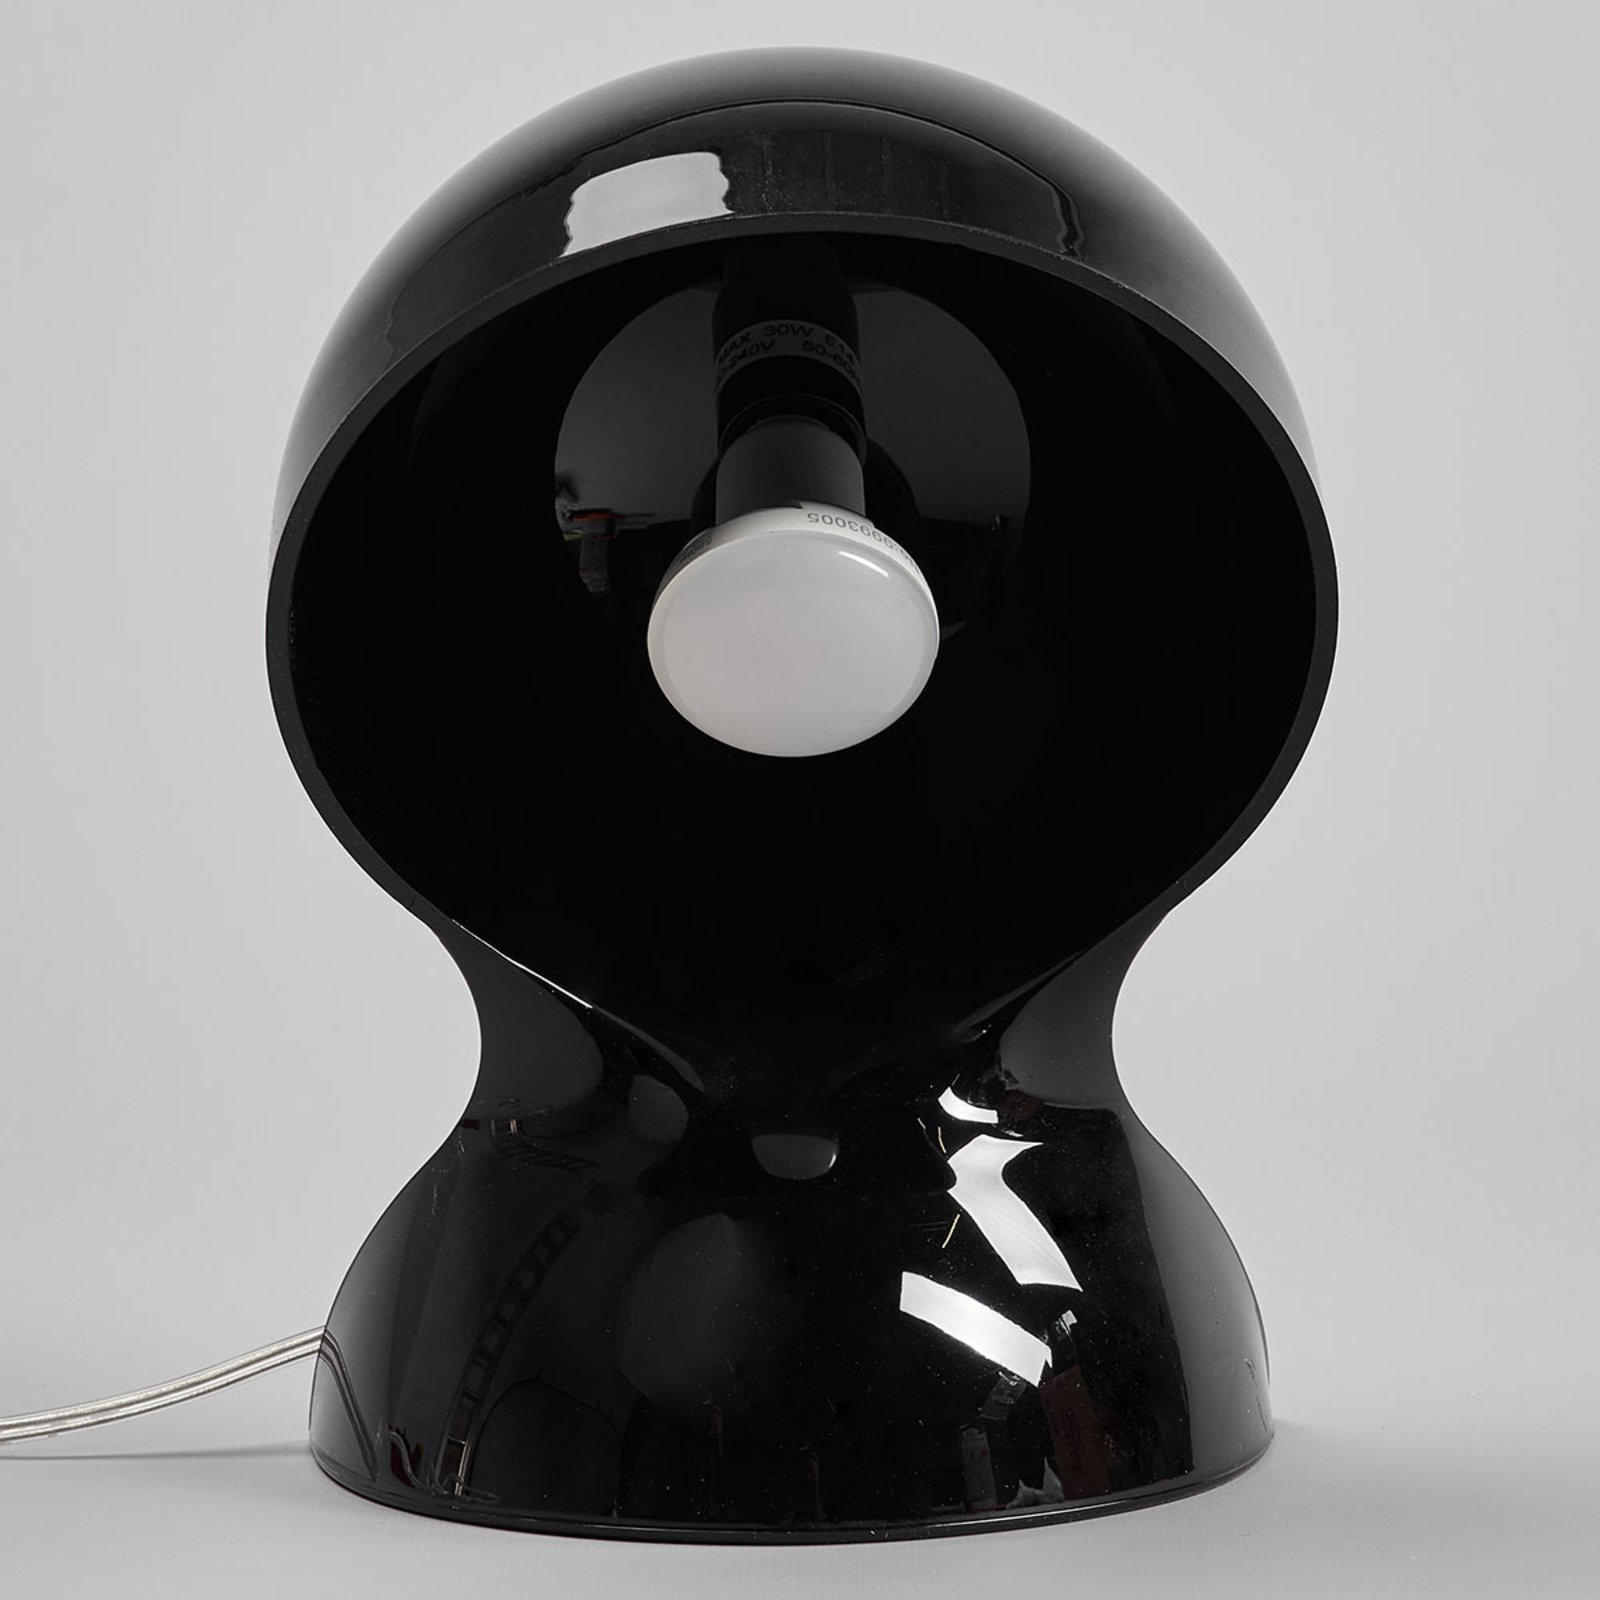 Artemide Dalù designer tafellamp in het zwart